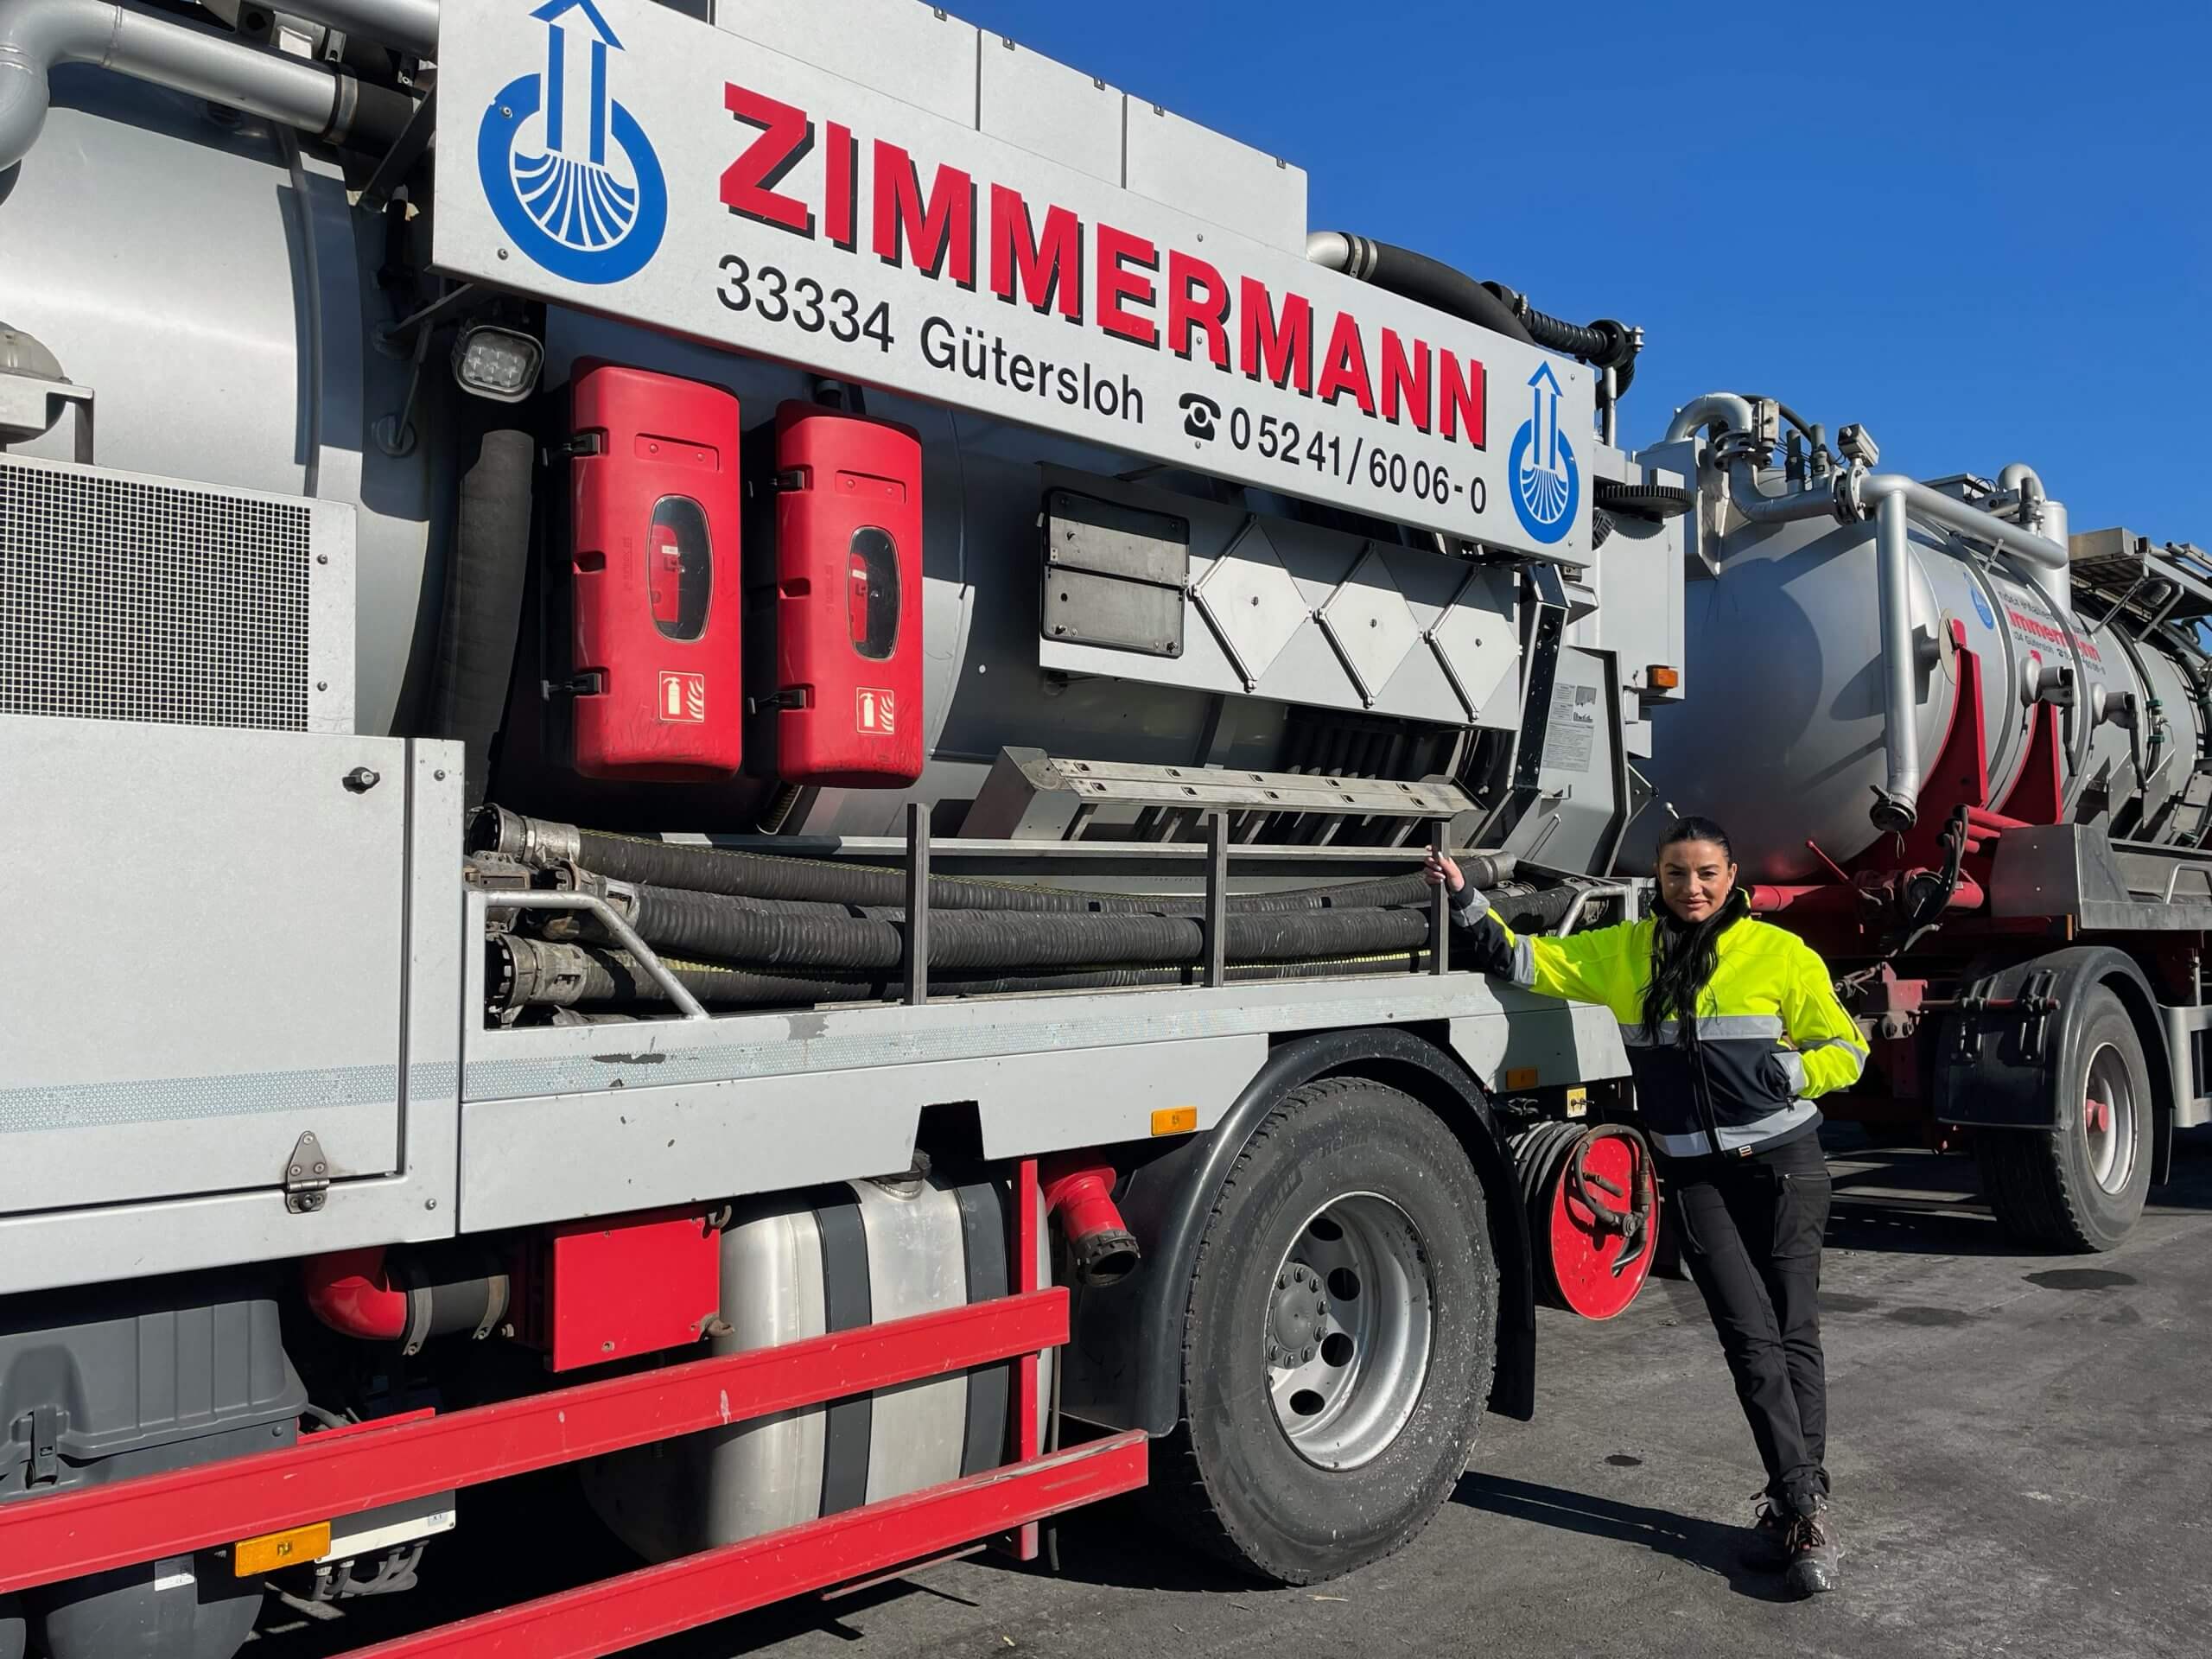 ZIMMERMANN Industrieservice - Expertise im Bereich Rückbau und Stilllegung von Industrieanlagen